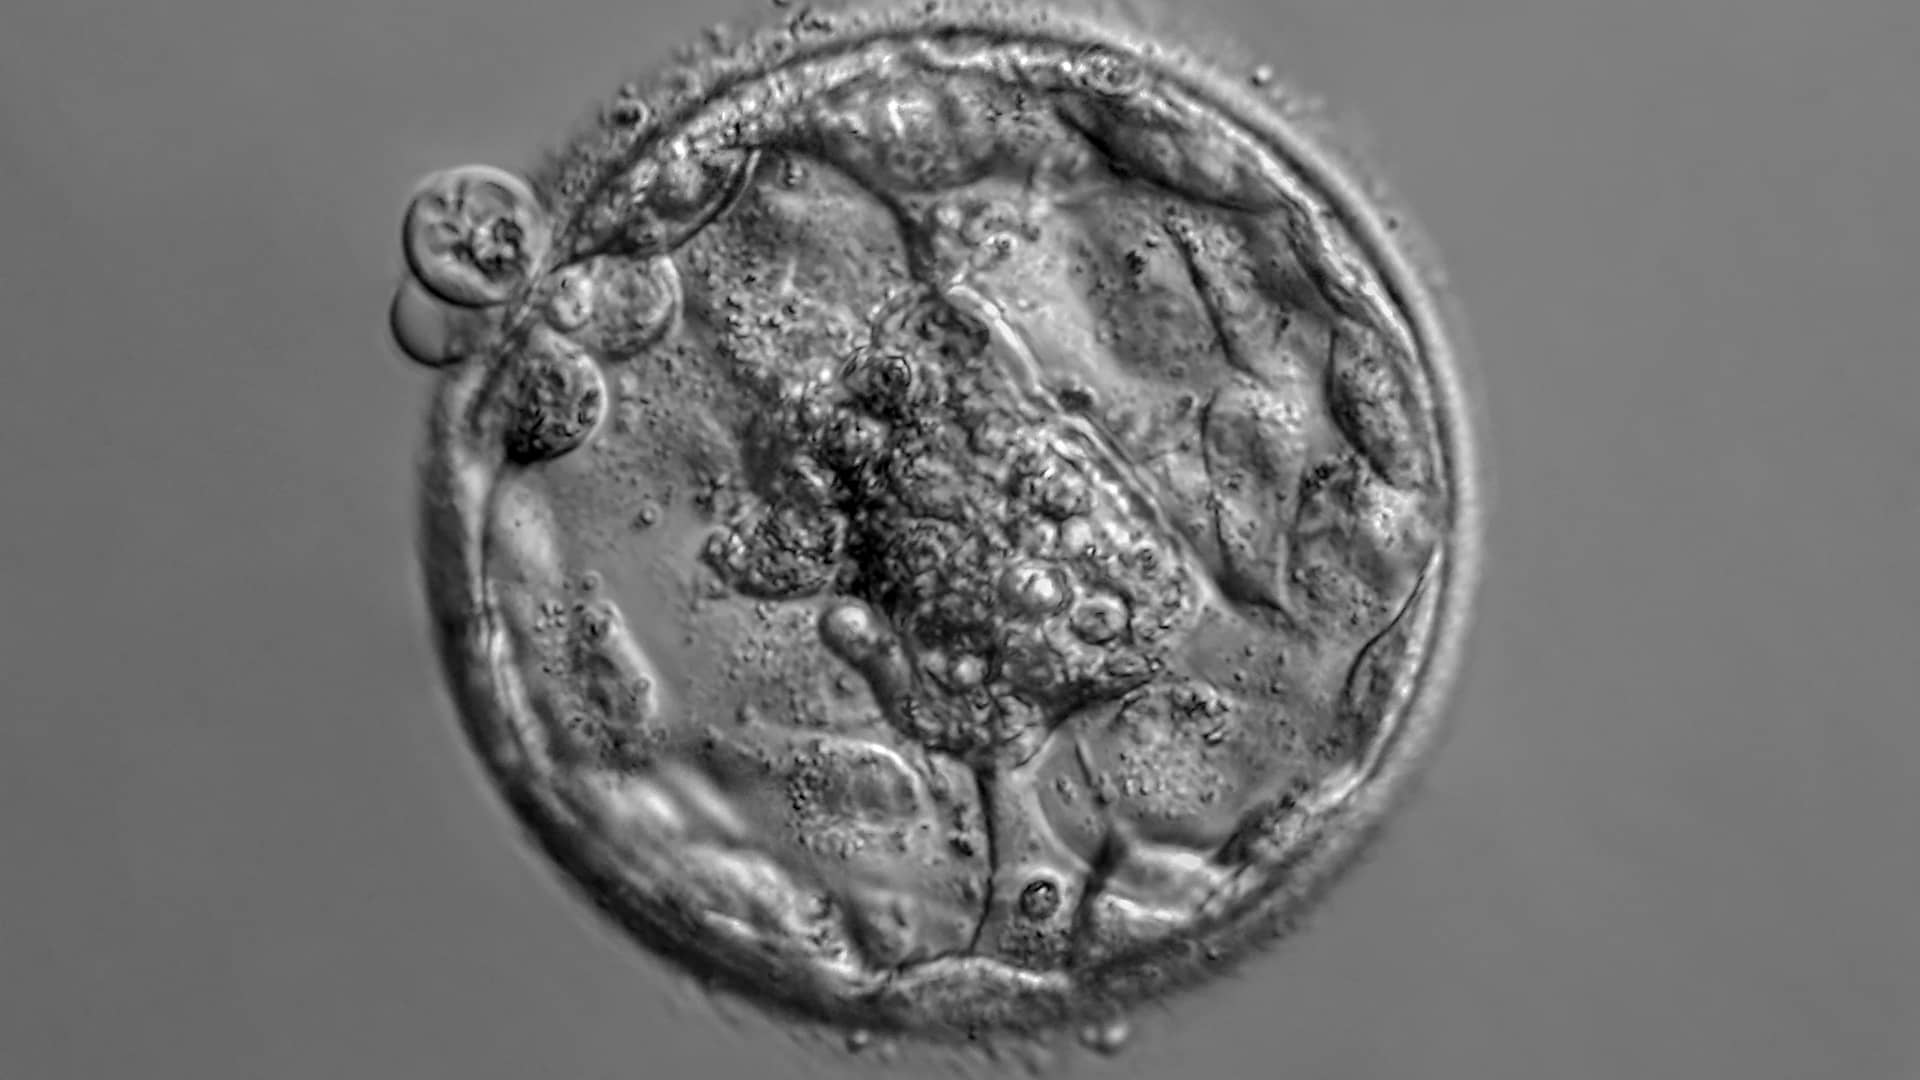 Fotomicrografía de un embrión humano aislado que representa la donación de embriones